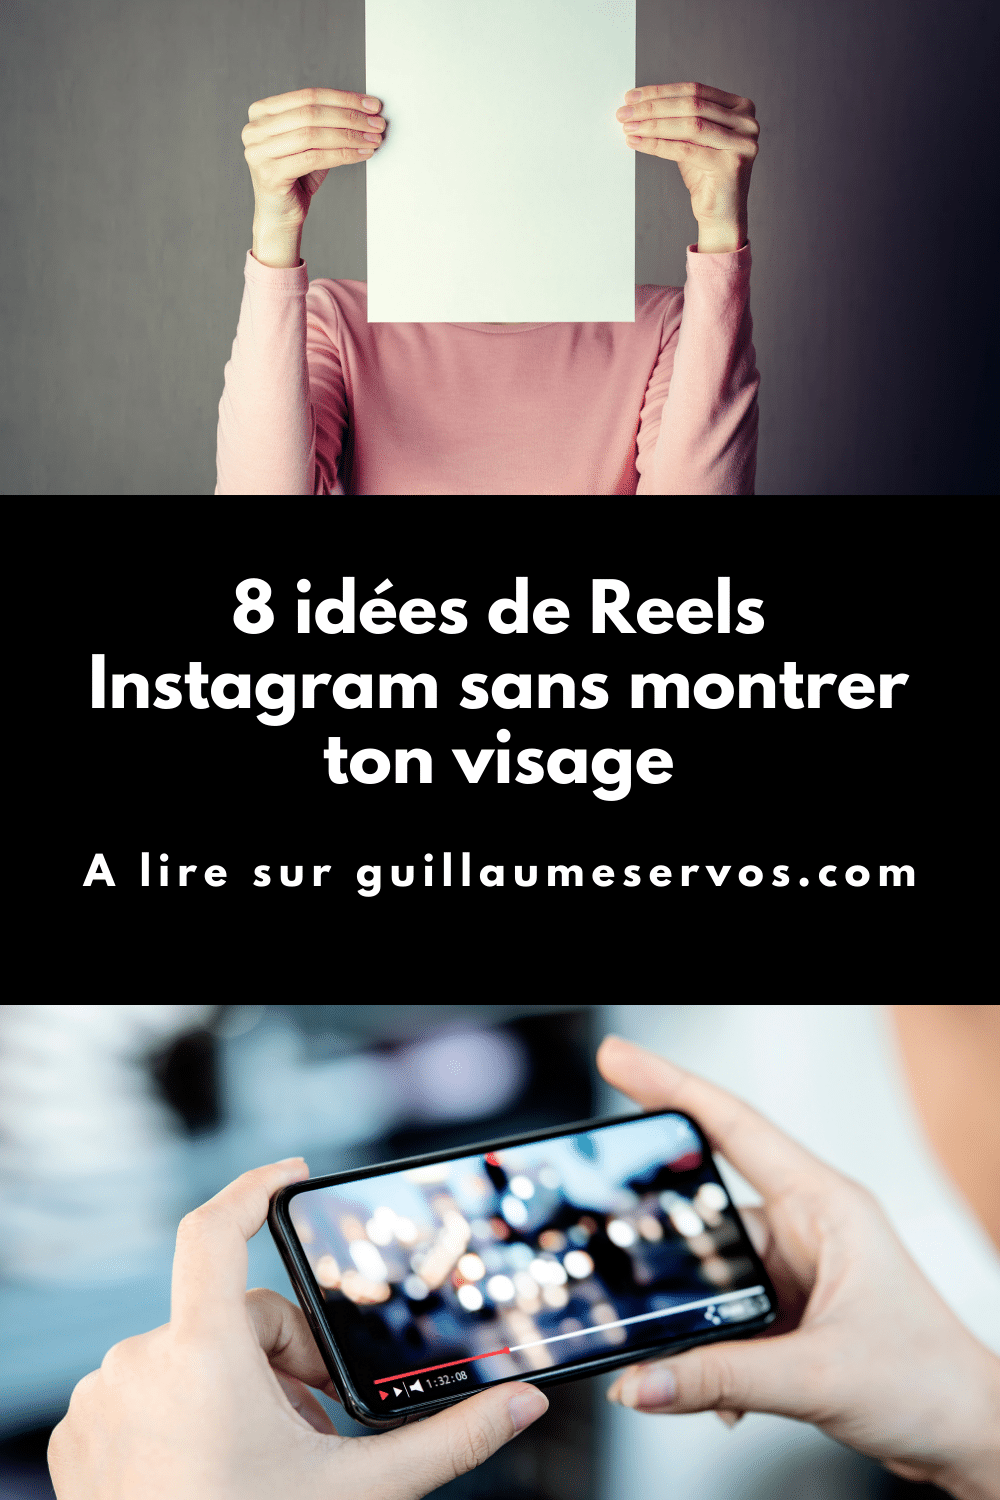 8 idées de Reels Instagram sans montrer ton visage